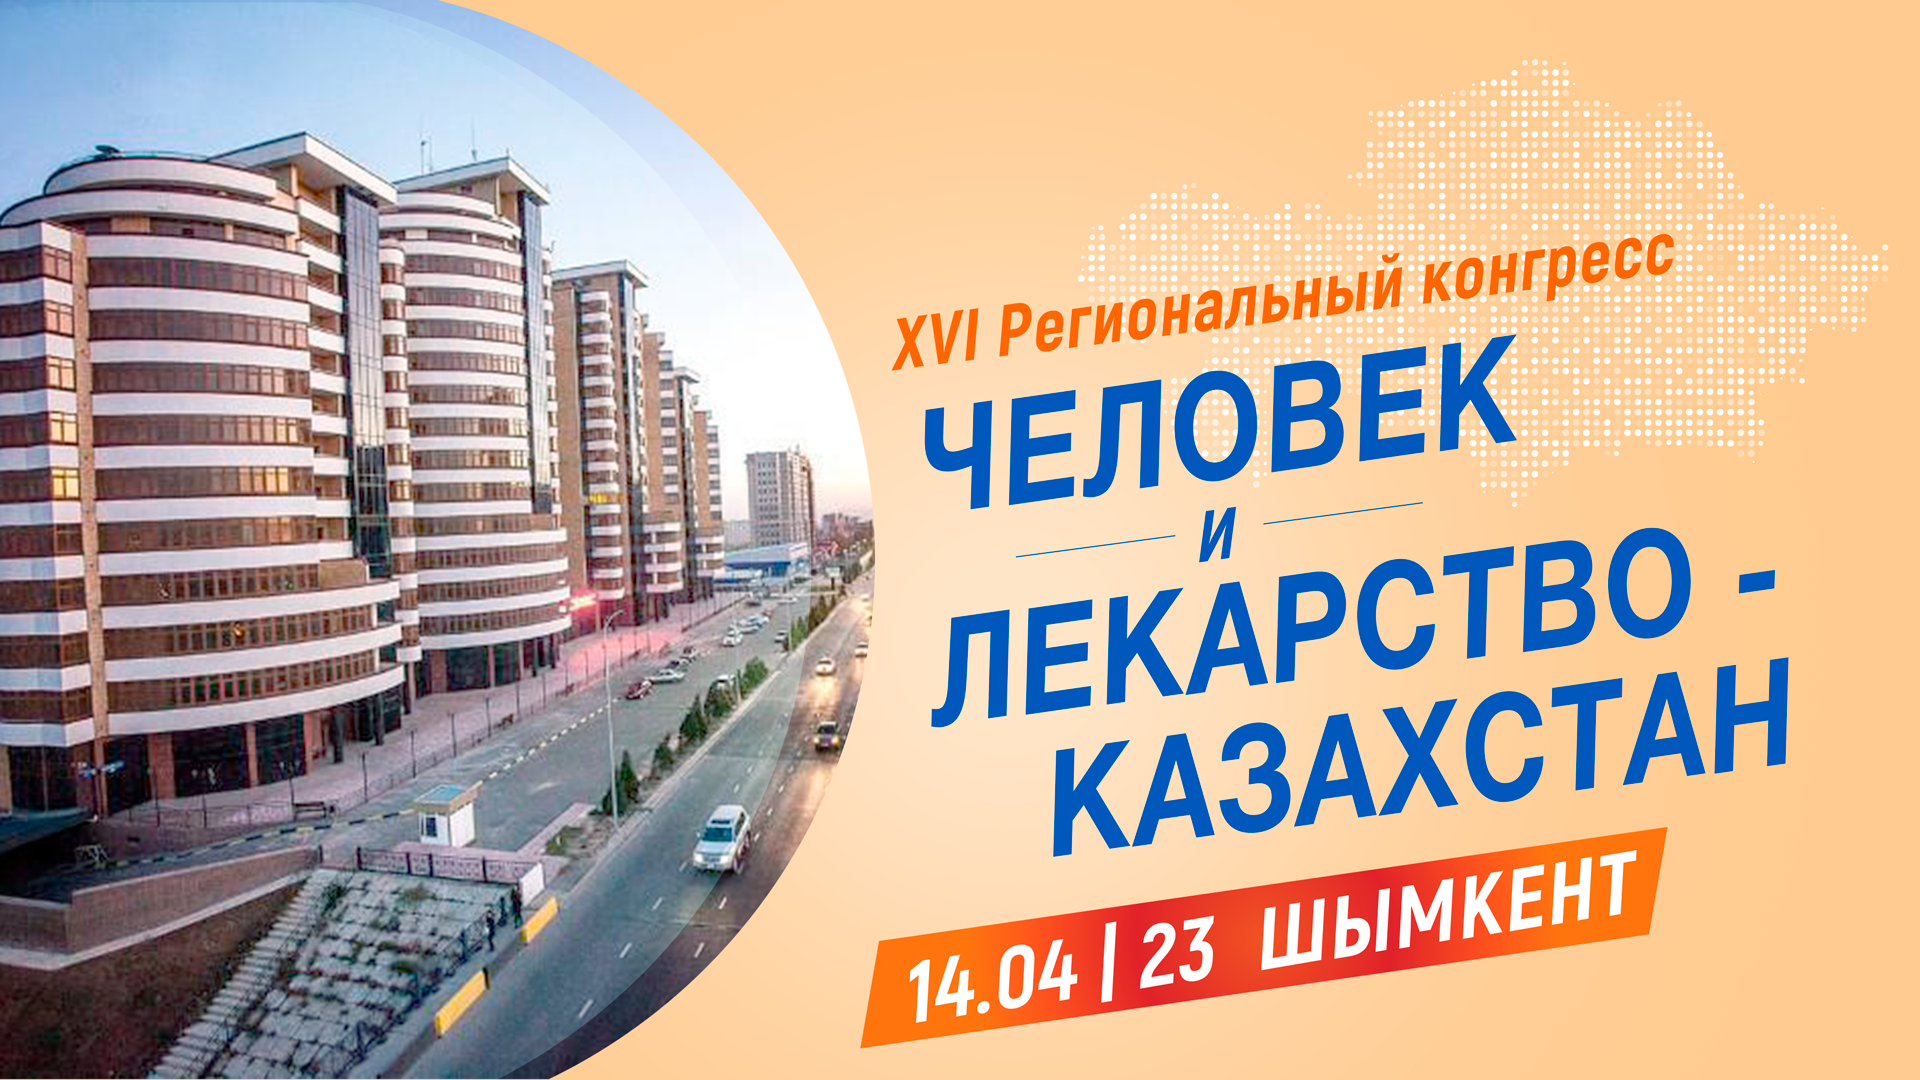 <p>"Человек и Лекарство- Казахстан"- Шымкент</p>
<p>Адрес: отель Rixos Khadisha Shymkent, ул, Желтоксан, 17. Регистрация оффлайн с 08.00 ч.<br />Каждый участник получит сертификат на 8 часов. Участие бесплатное!</p>